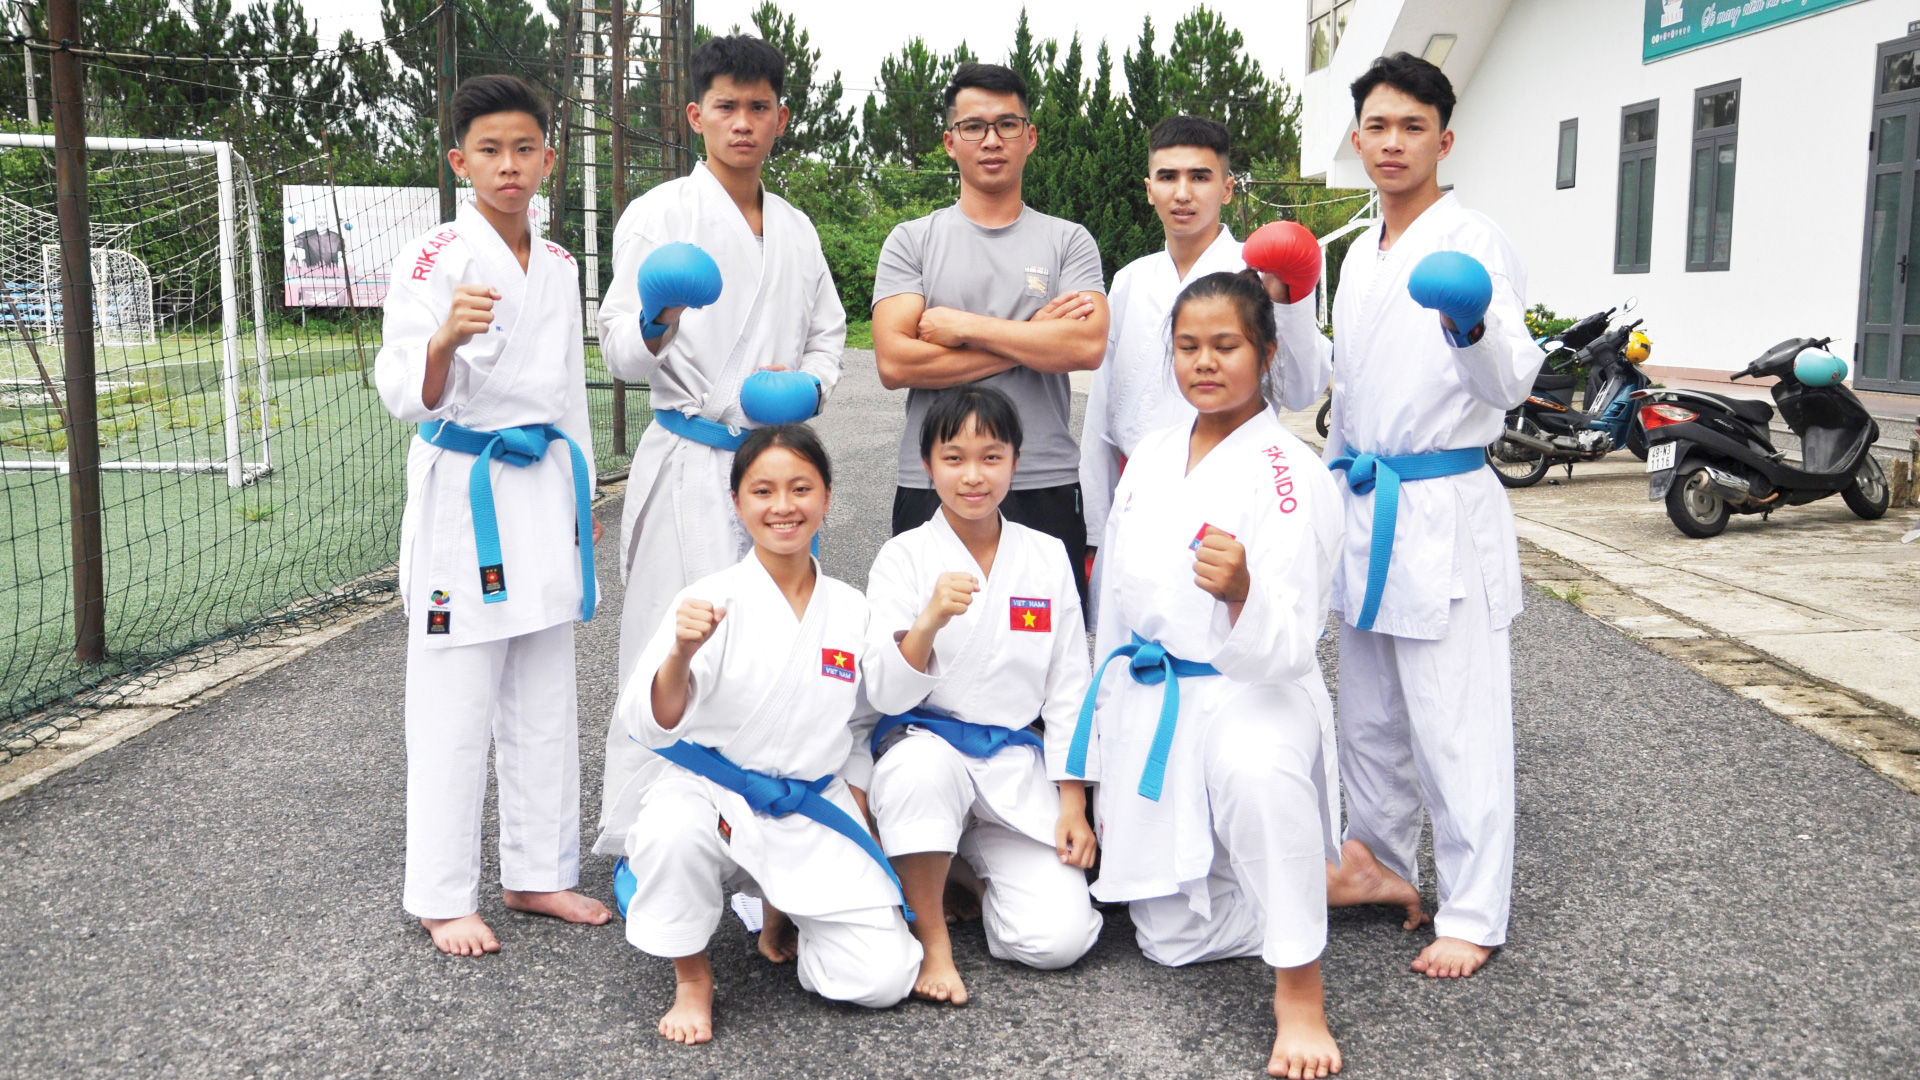 HLV Nguyễn Văn Hoàng ( đứng giữa, phía sau) cùng các môn sinh của mình tại một kỳ thi lên đẳng do Liên đoàn Karate Lâm Đồng tổ chức